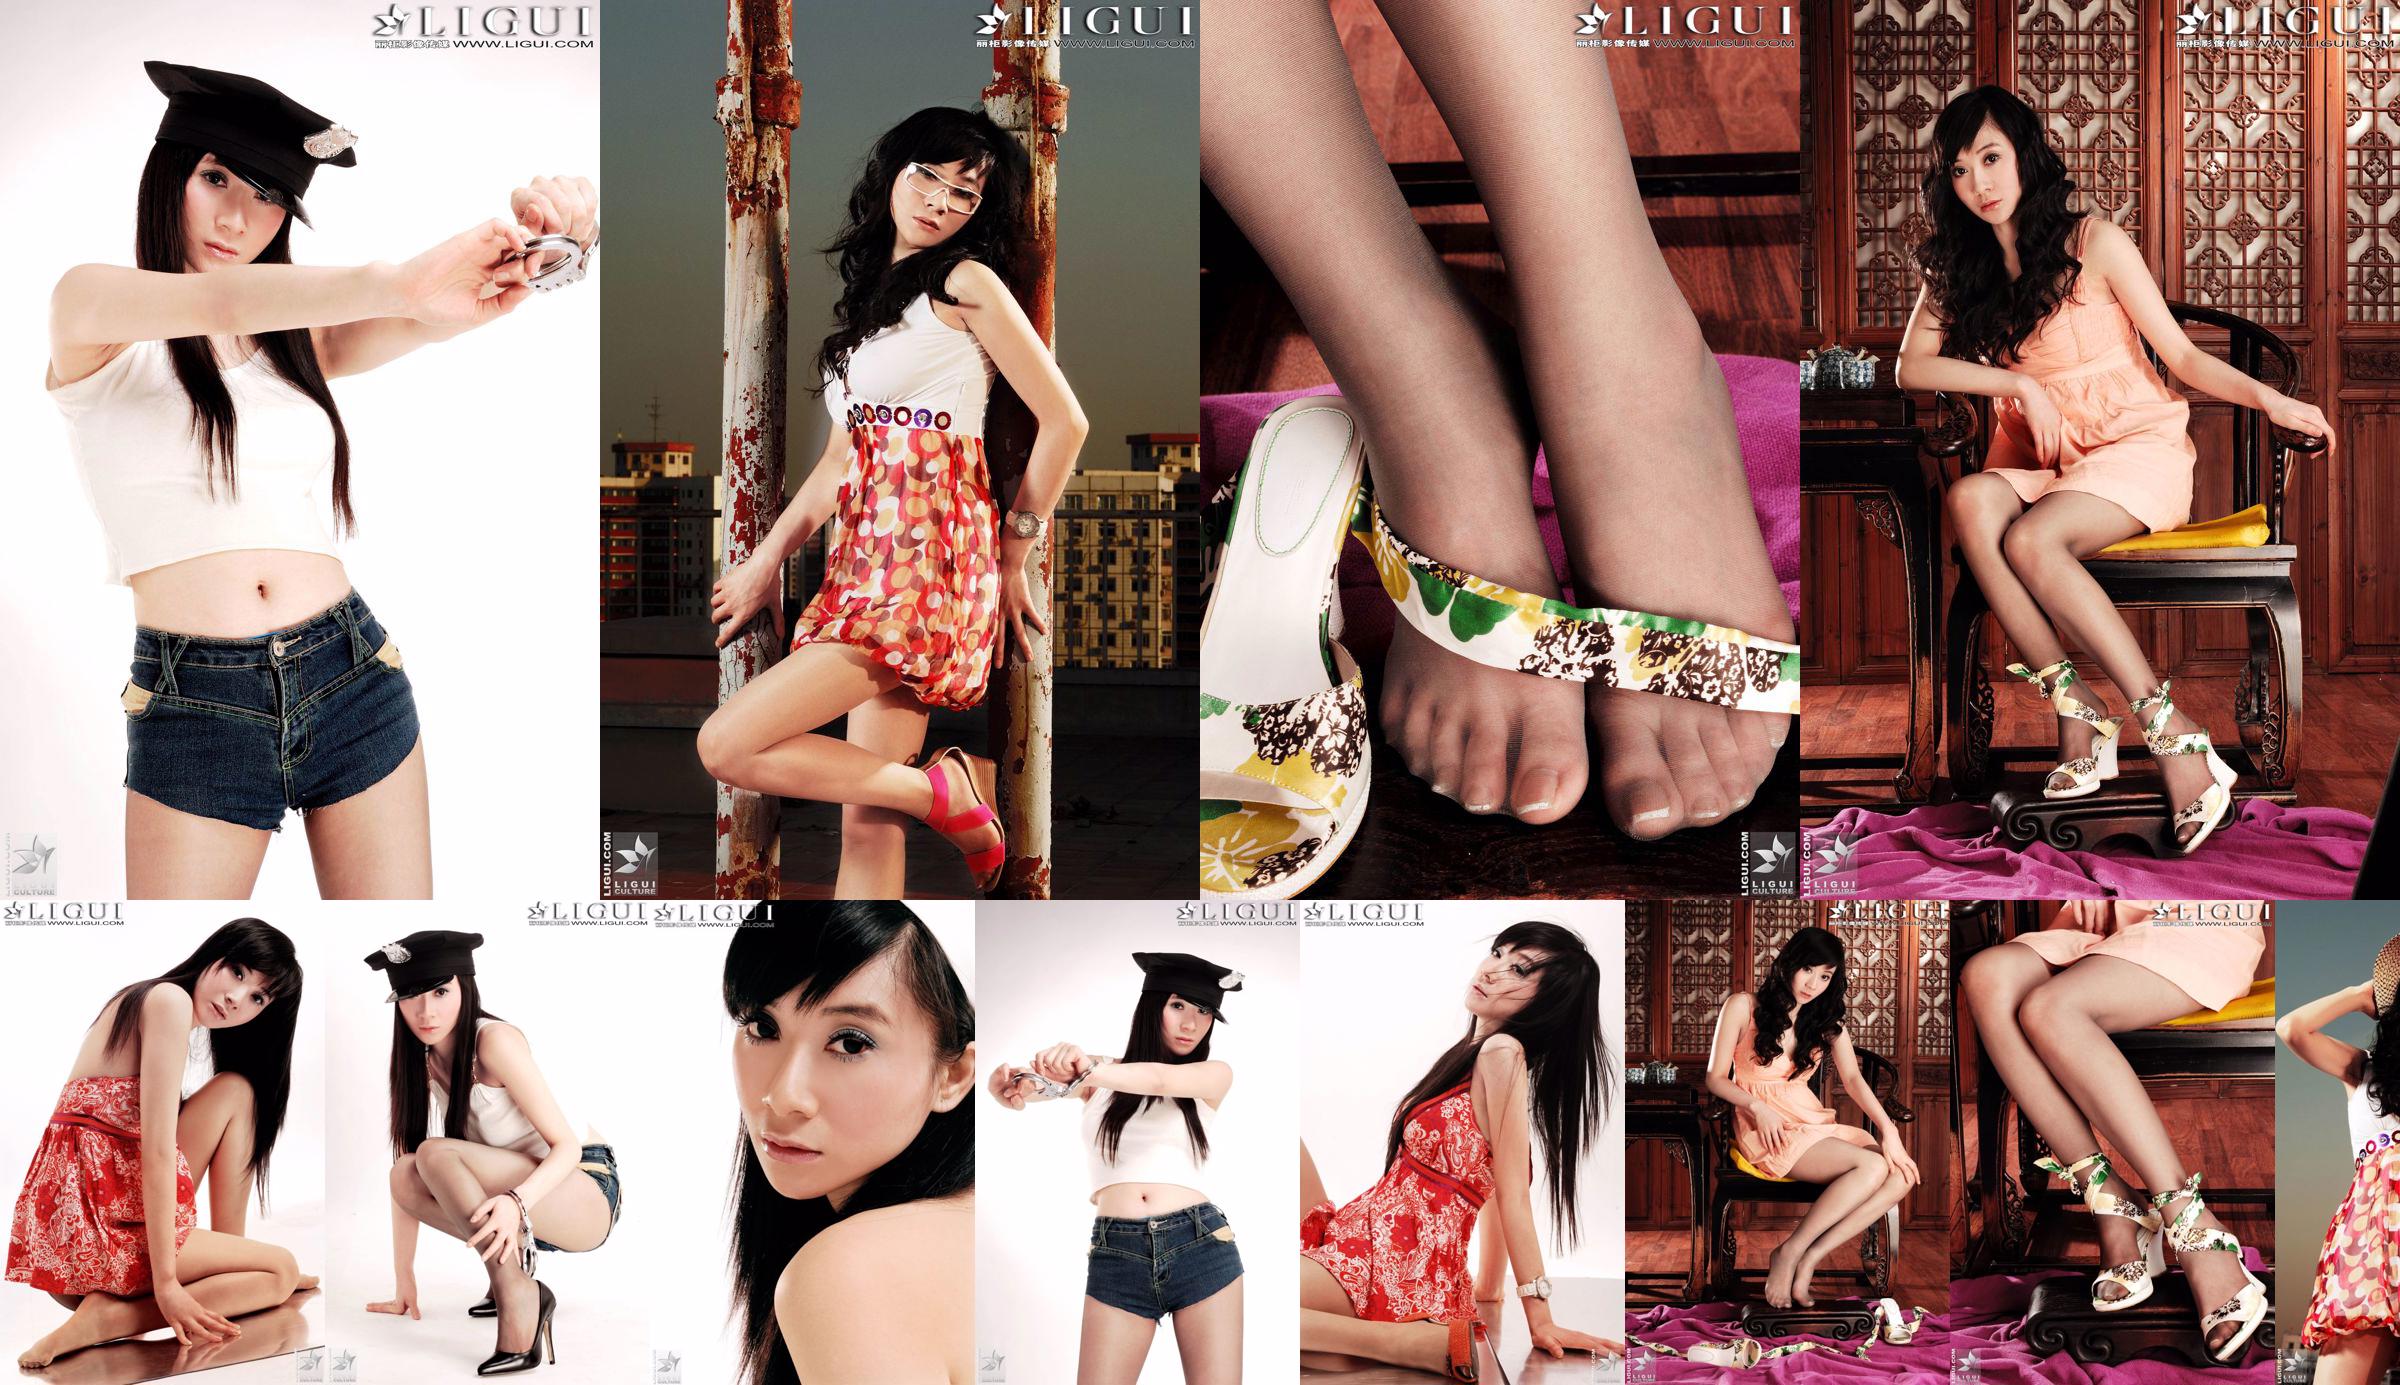 [丽 柜 LiGui] Modell Jinxin Seidiger Fuß und schöne Beine Foto Bild No.678363 Seite 1